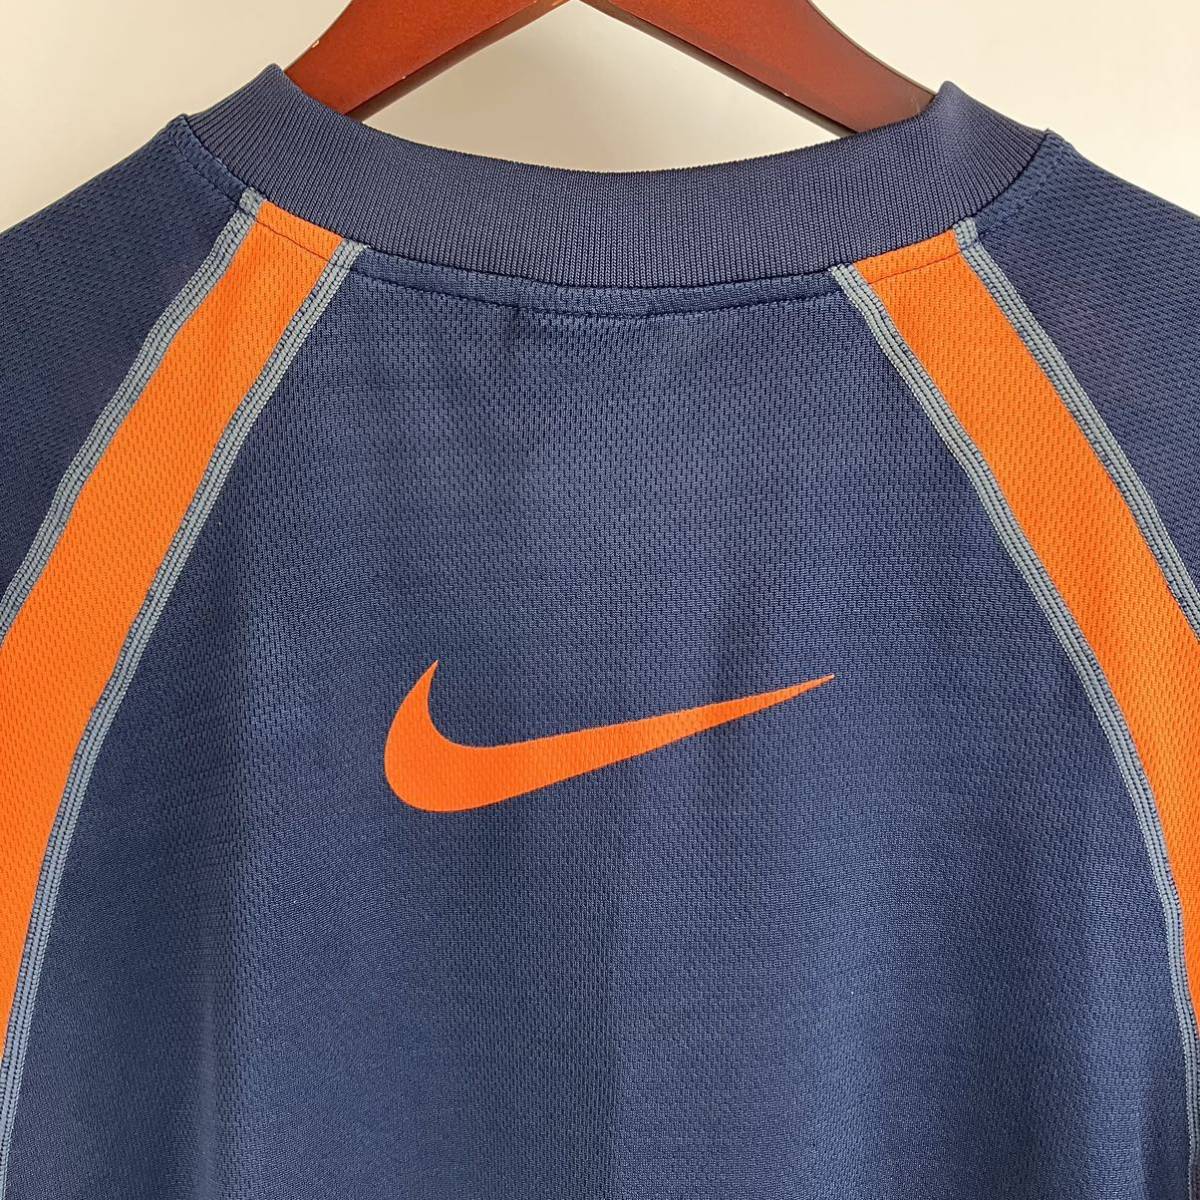 大きいサイズ NIKE ナイキ 半袖 Tシャツ メンズ L 紺 ネイビー オレンジ カジュアル スポーツ トレーニング ウェア ドライ 速乾